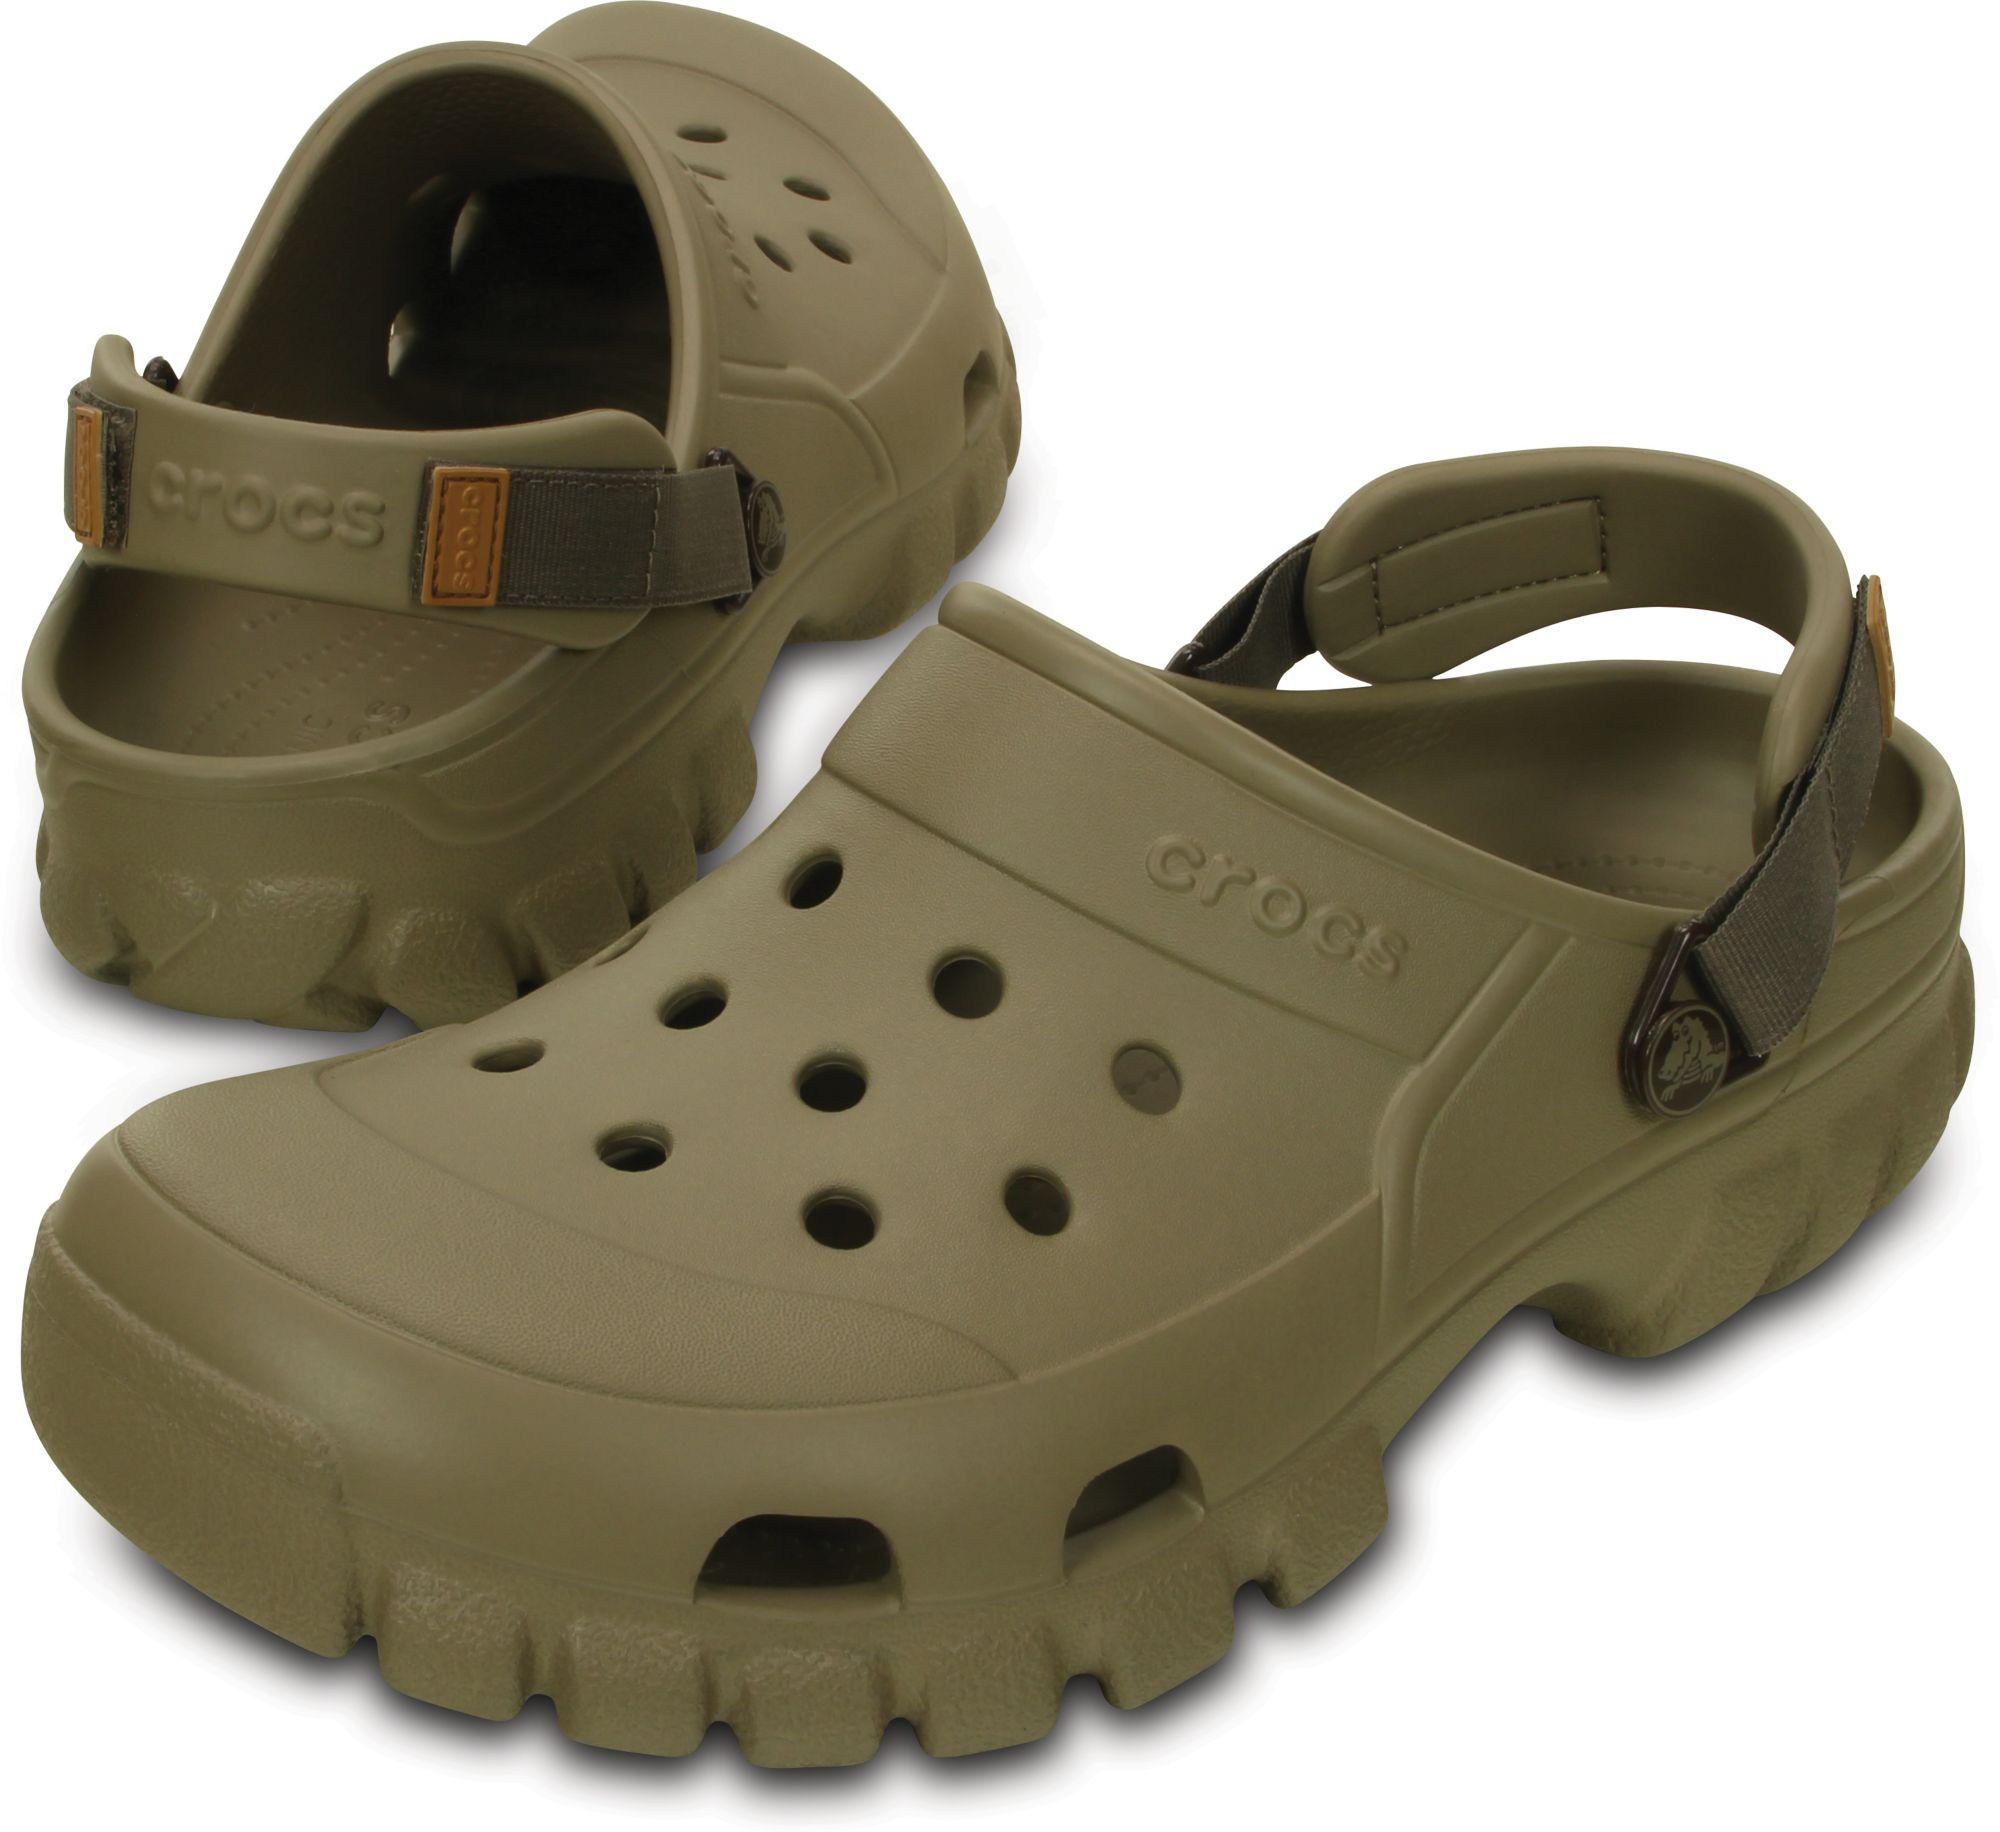 Crocs™ Offroad Sport Clogs in Khaki (Green) for Men - Lyst